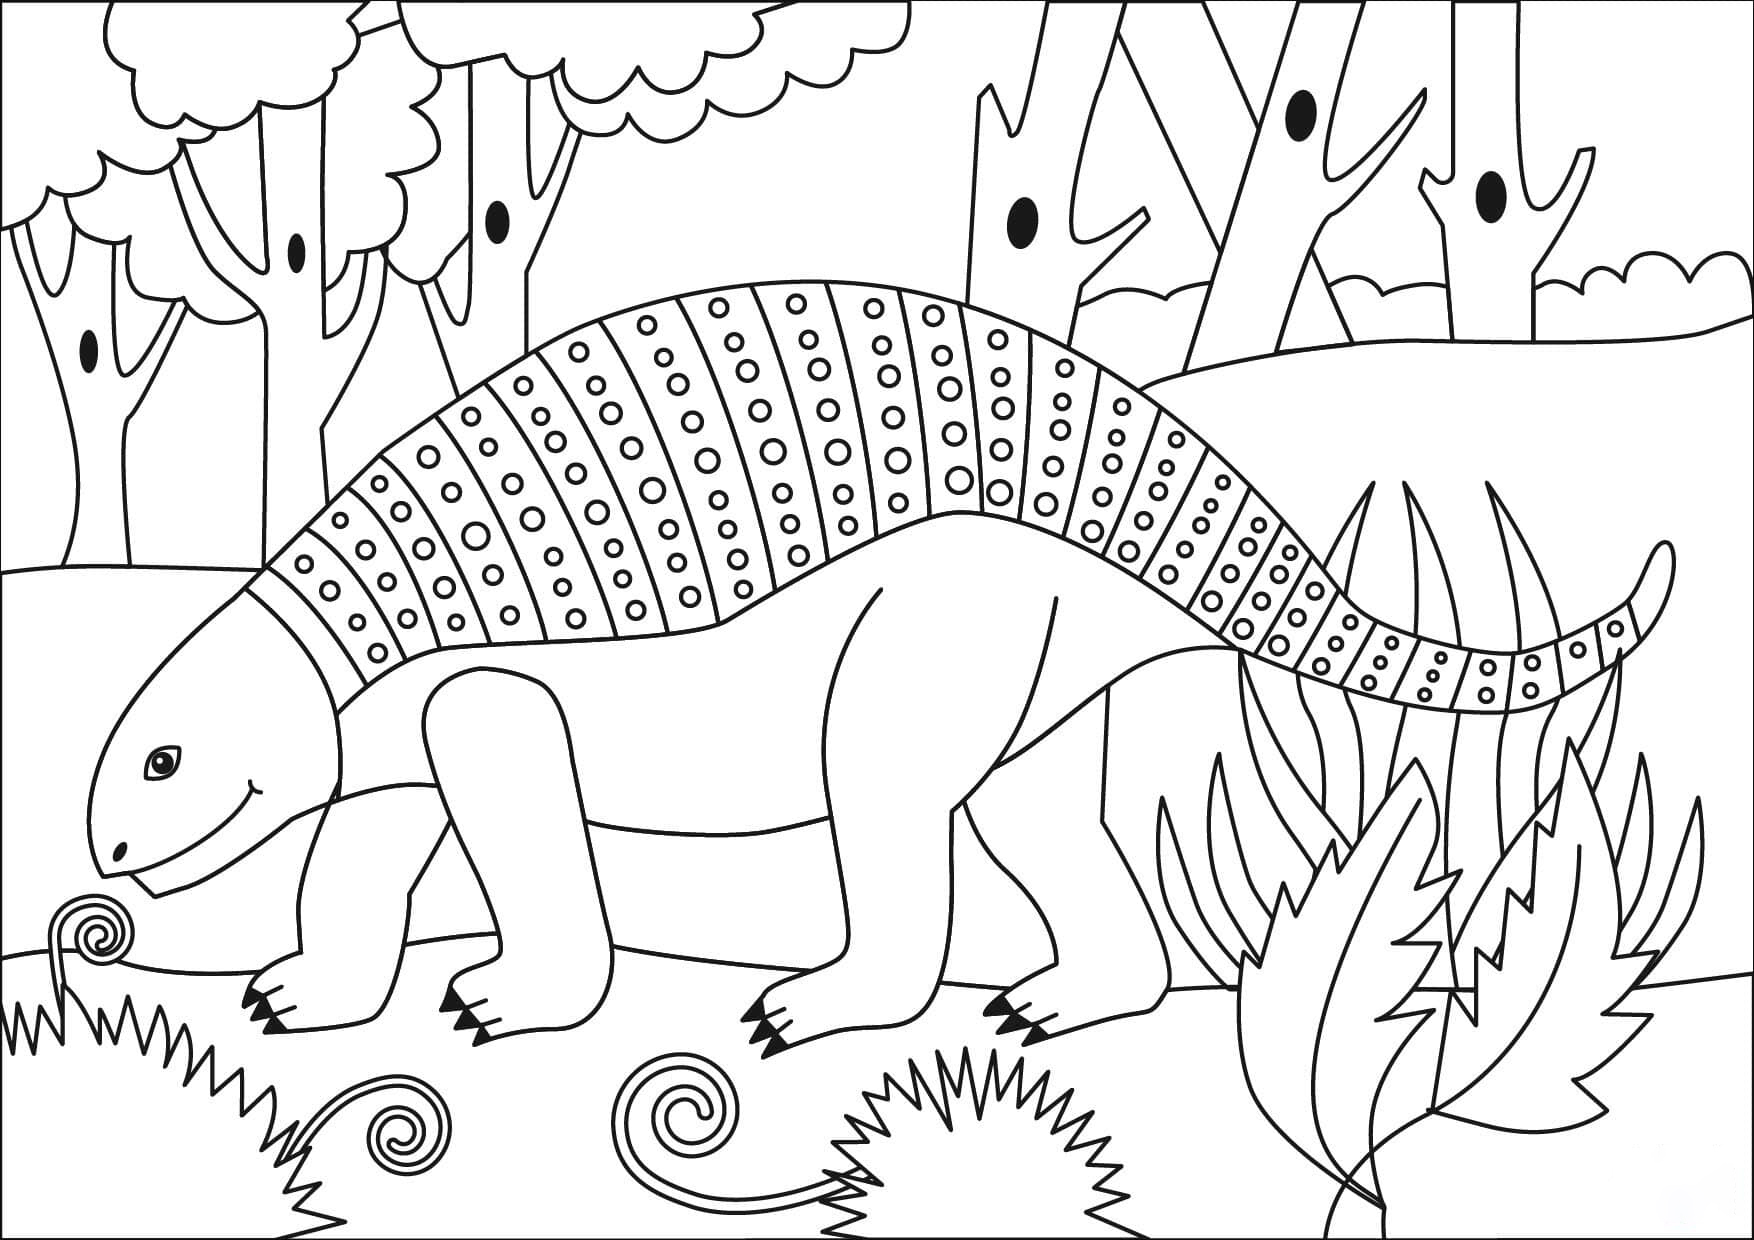 结节龙属于甲龙恐龙类型，来自甲龙的原始森林